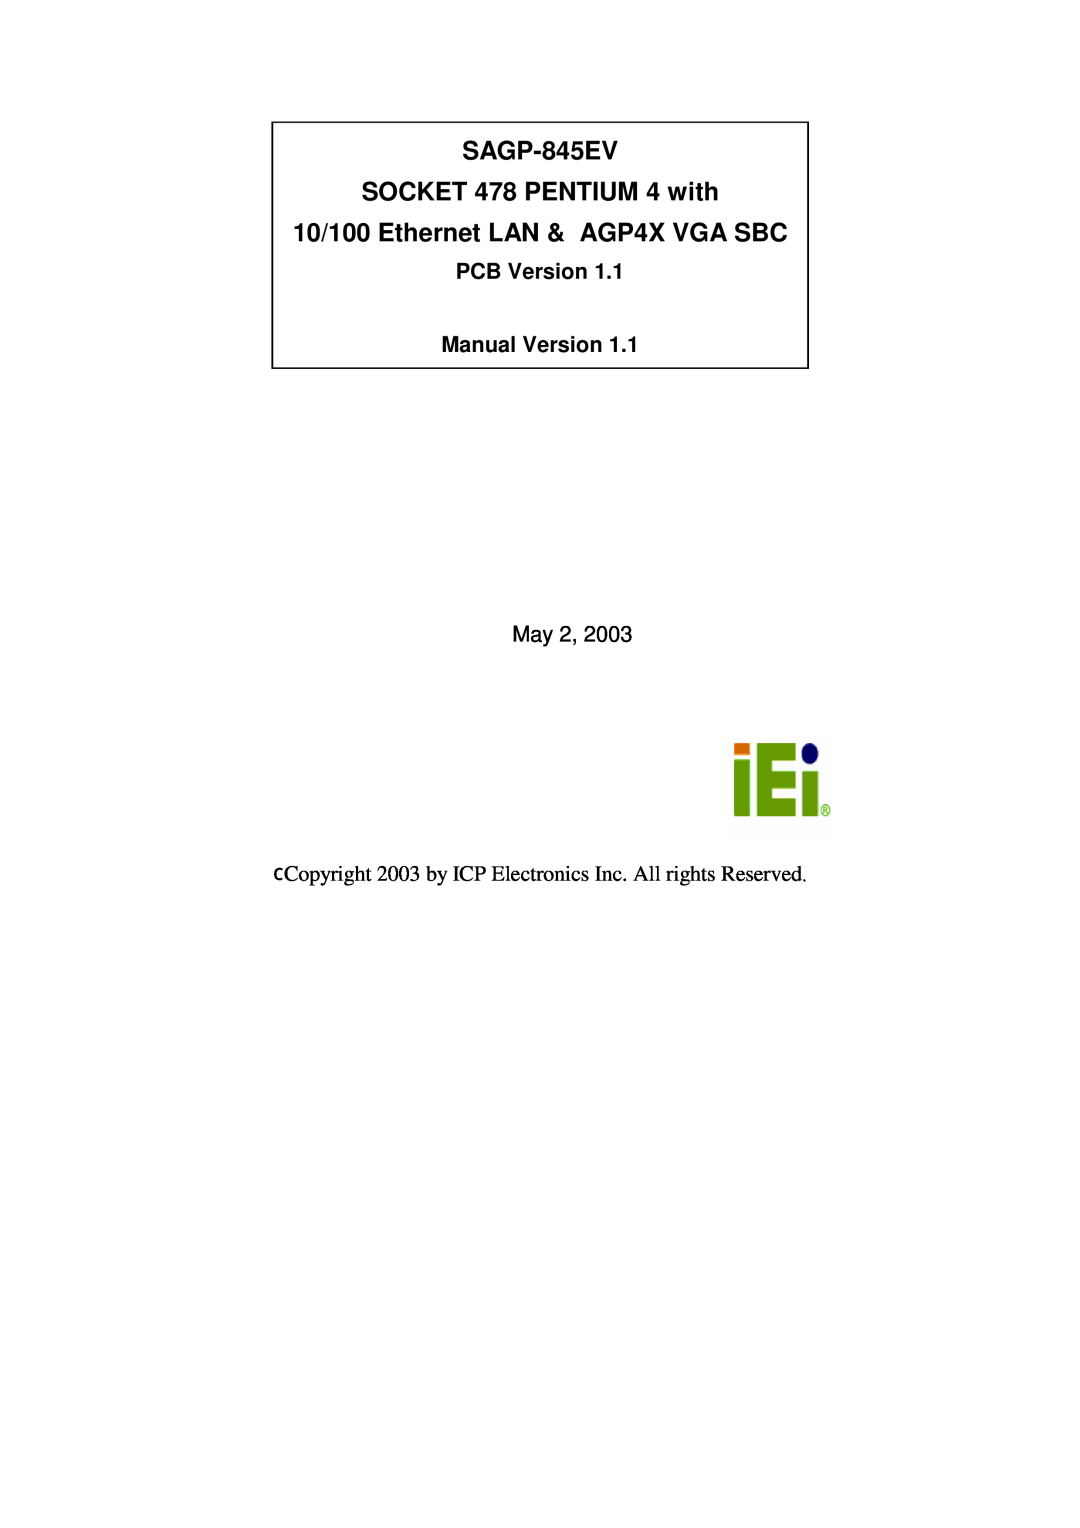 ICP DAS USA manual SAGP-845EV SOCKET 478 PENTIUM 4 with, 10/100 Ethernet LAN & AGP4X VGA SBC 